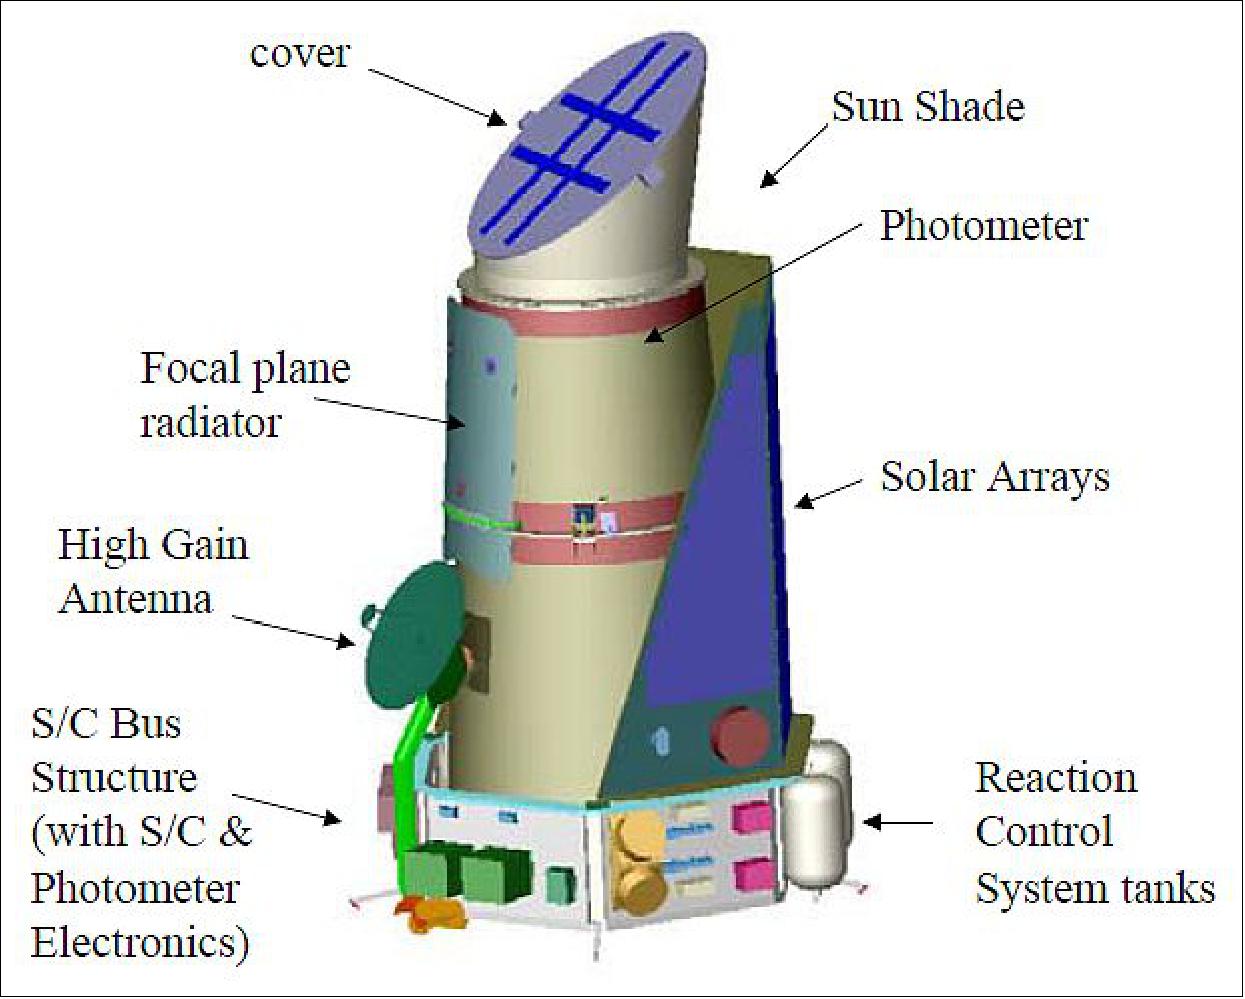 Figure 4: Kepler spacecraft integrated with Photometer (image credit: NASA, Kepler Team)